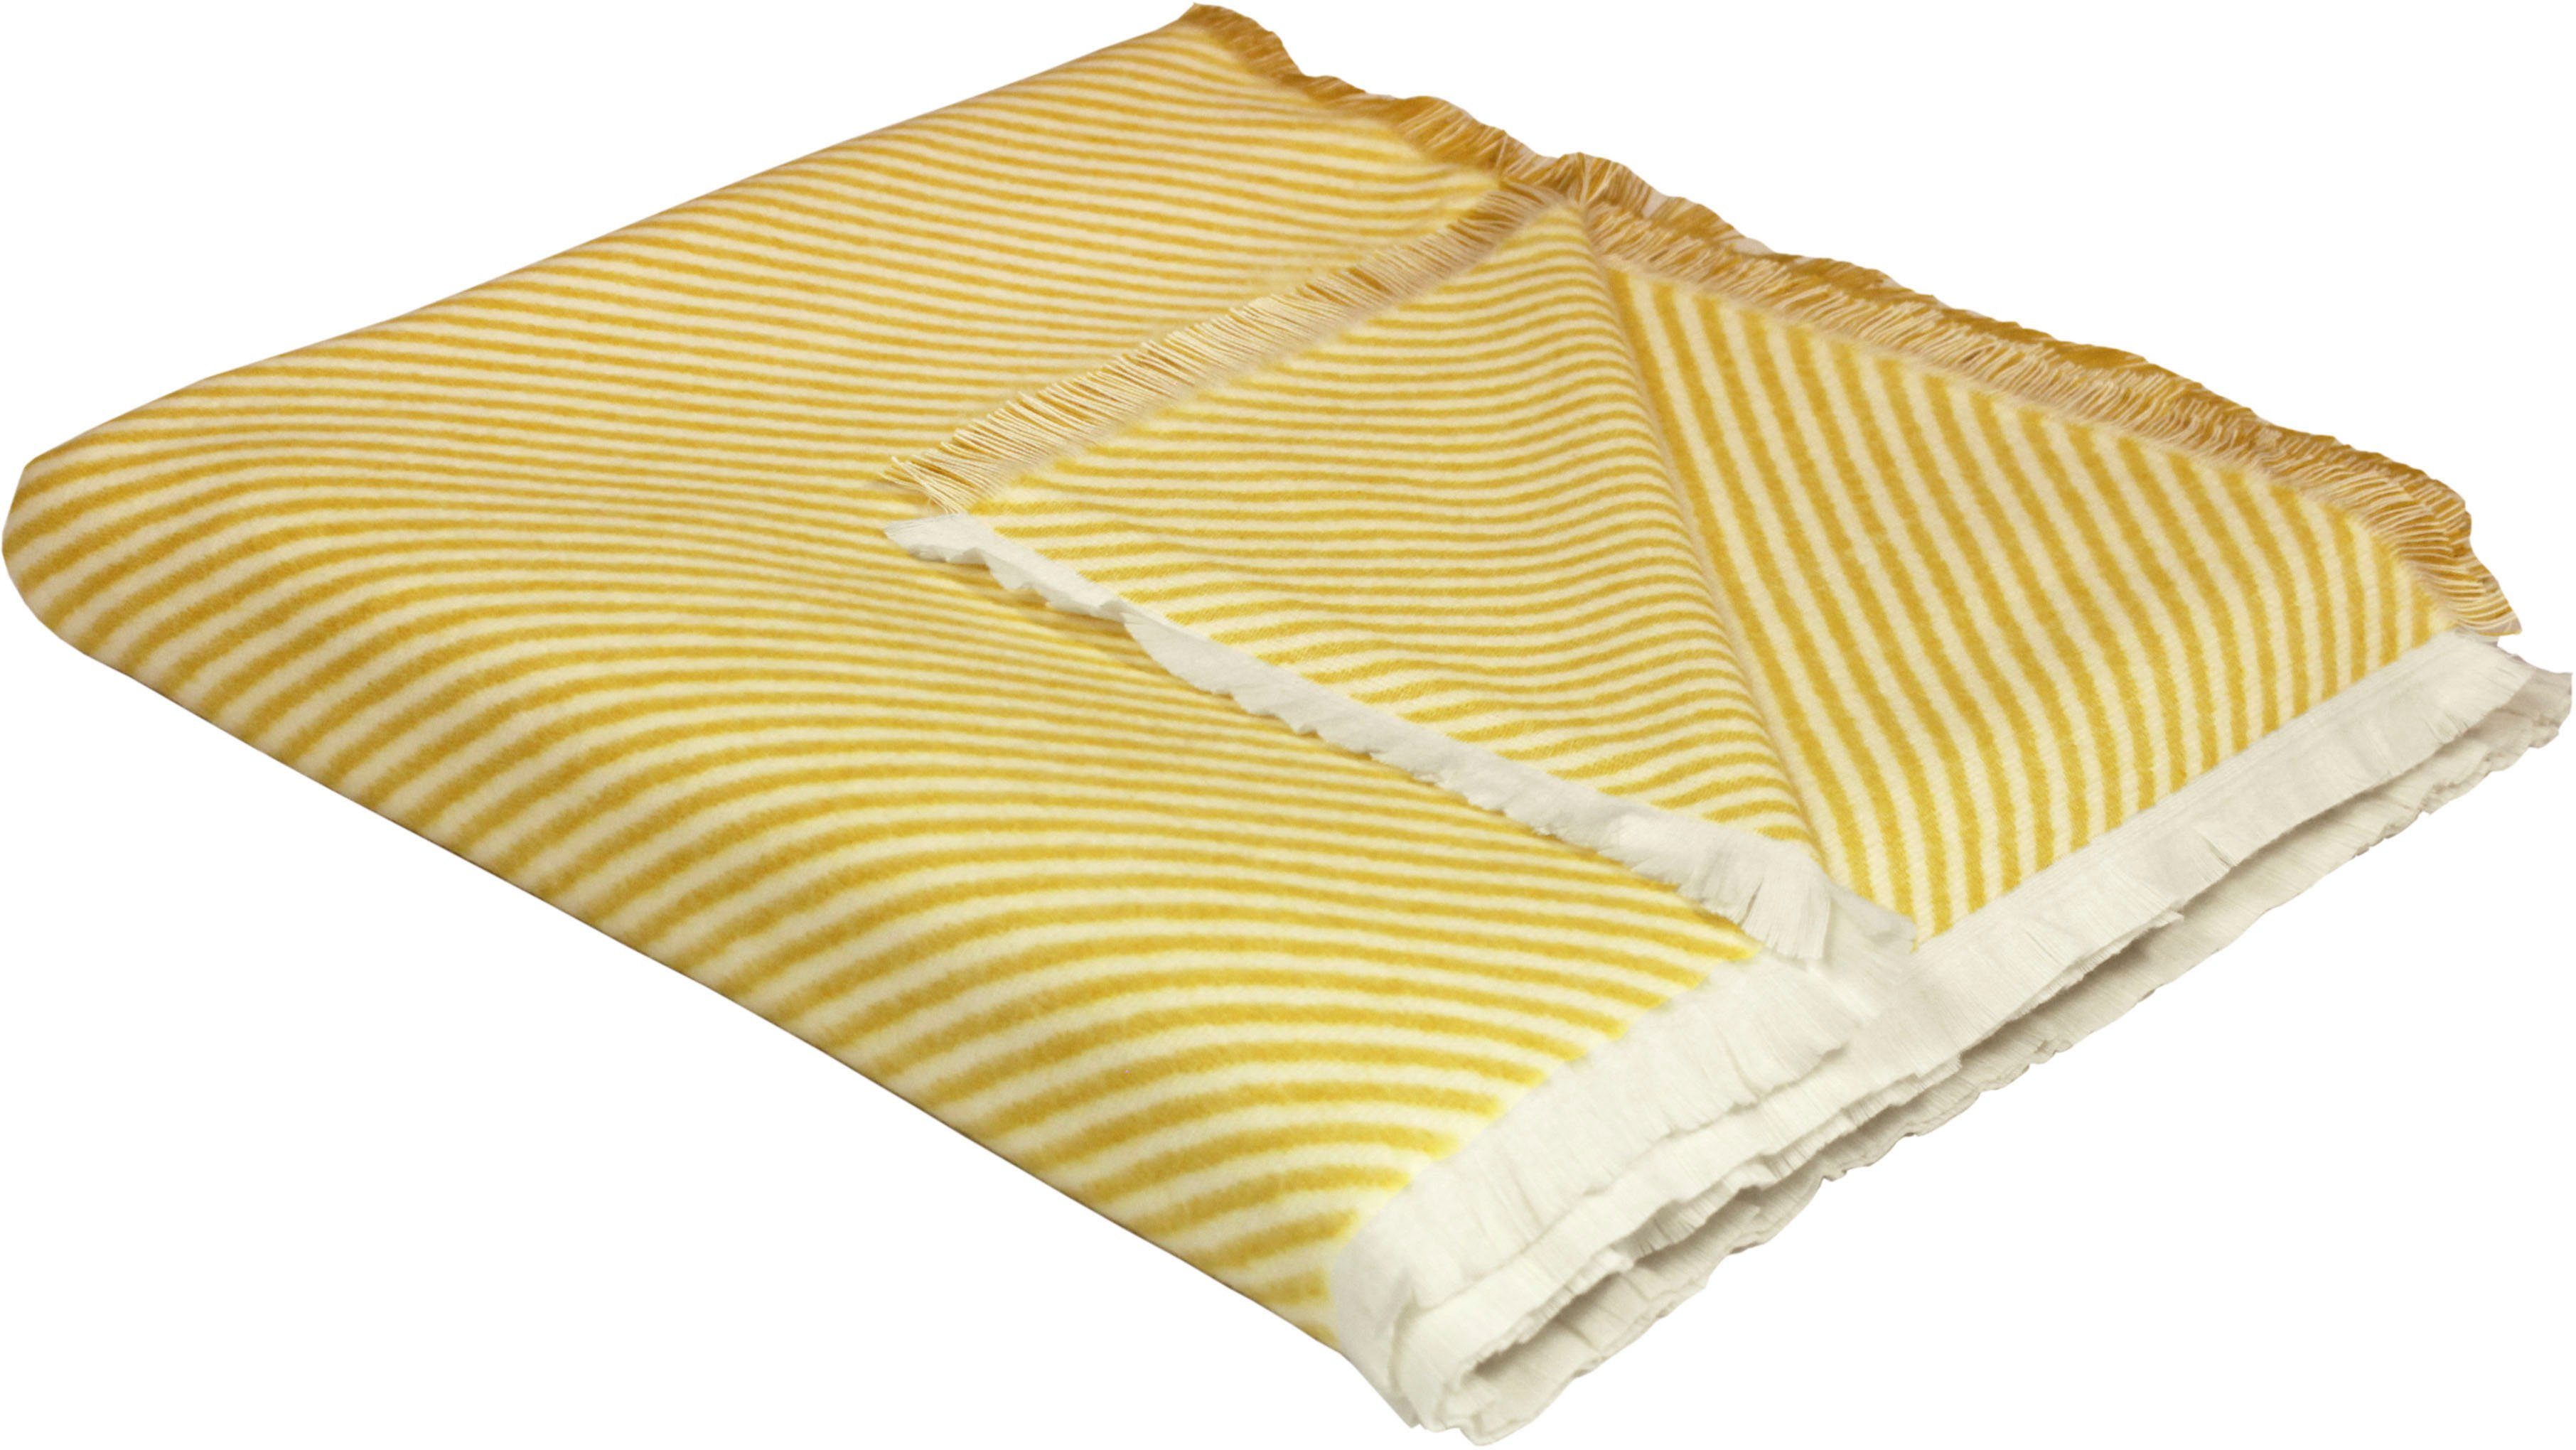 Wohndecke Stripes, Adam, GOTS zertifiziert - nachhaltig aus Bio-Baumwolle, Kuscheldecke curry